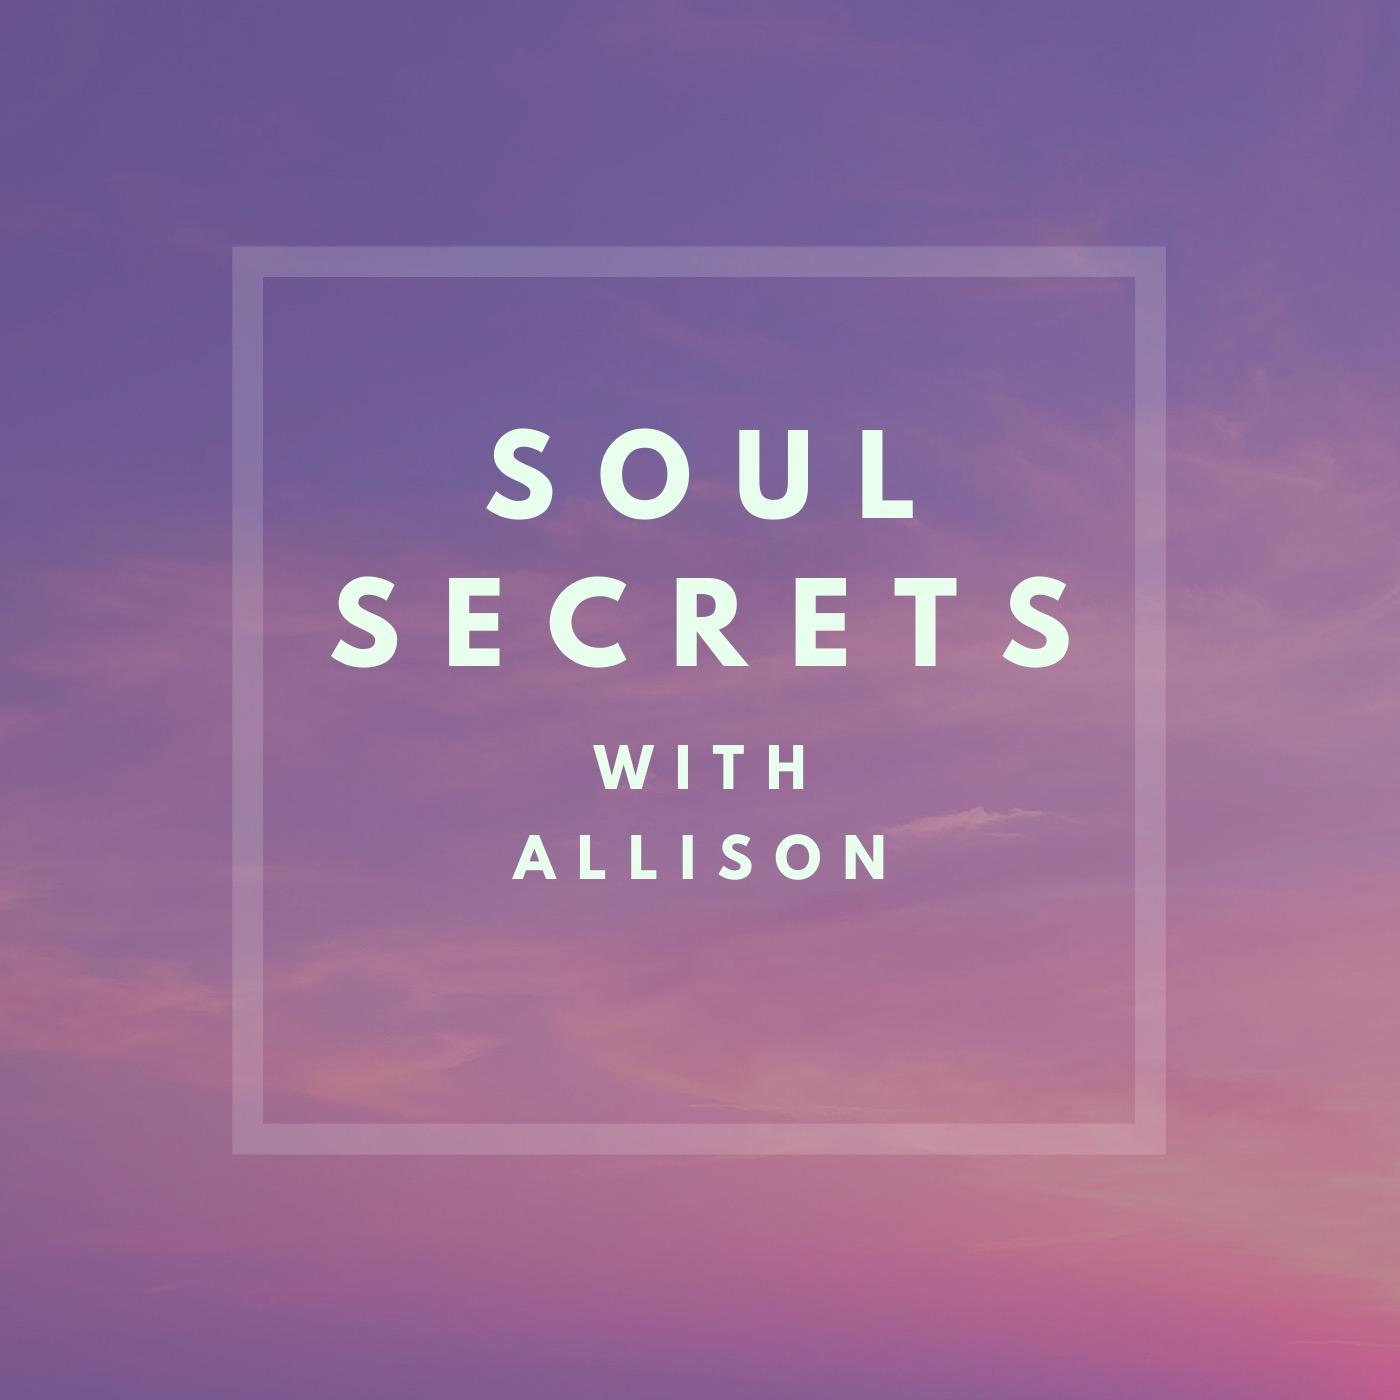 Soul Secrets with Allison